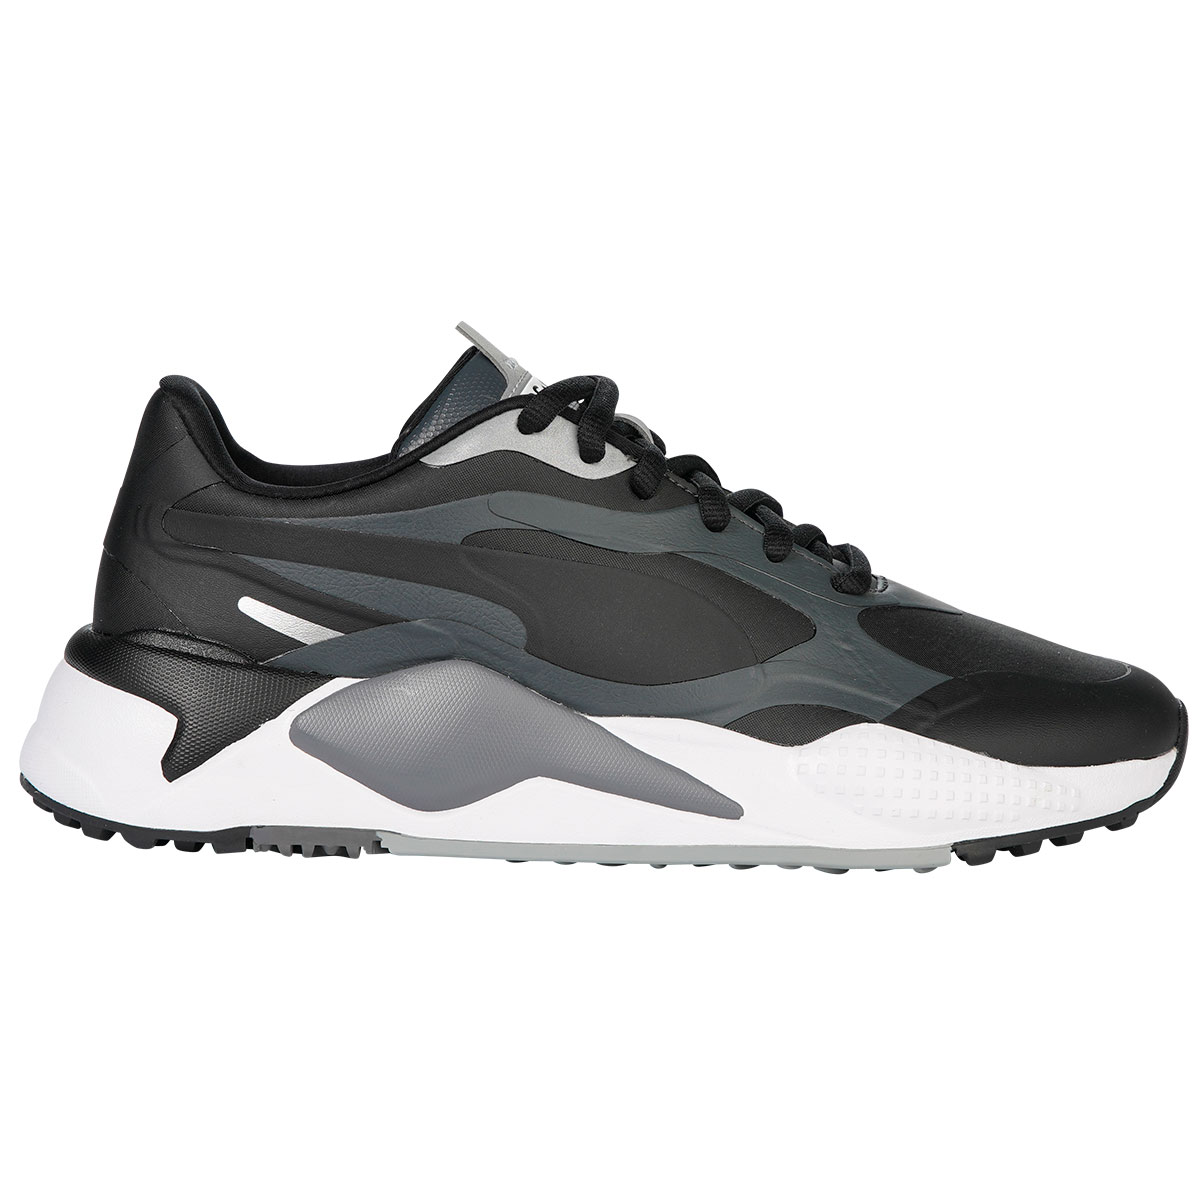 grey puma golf shoes